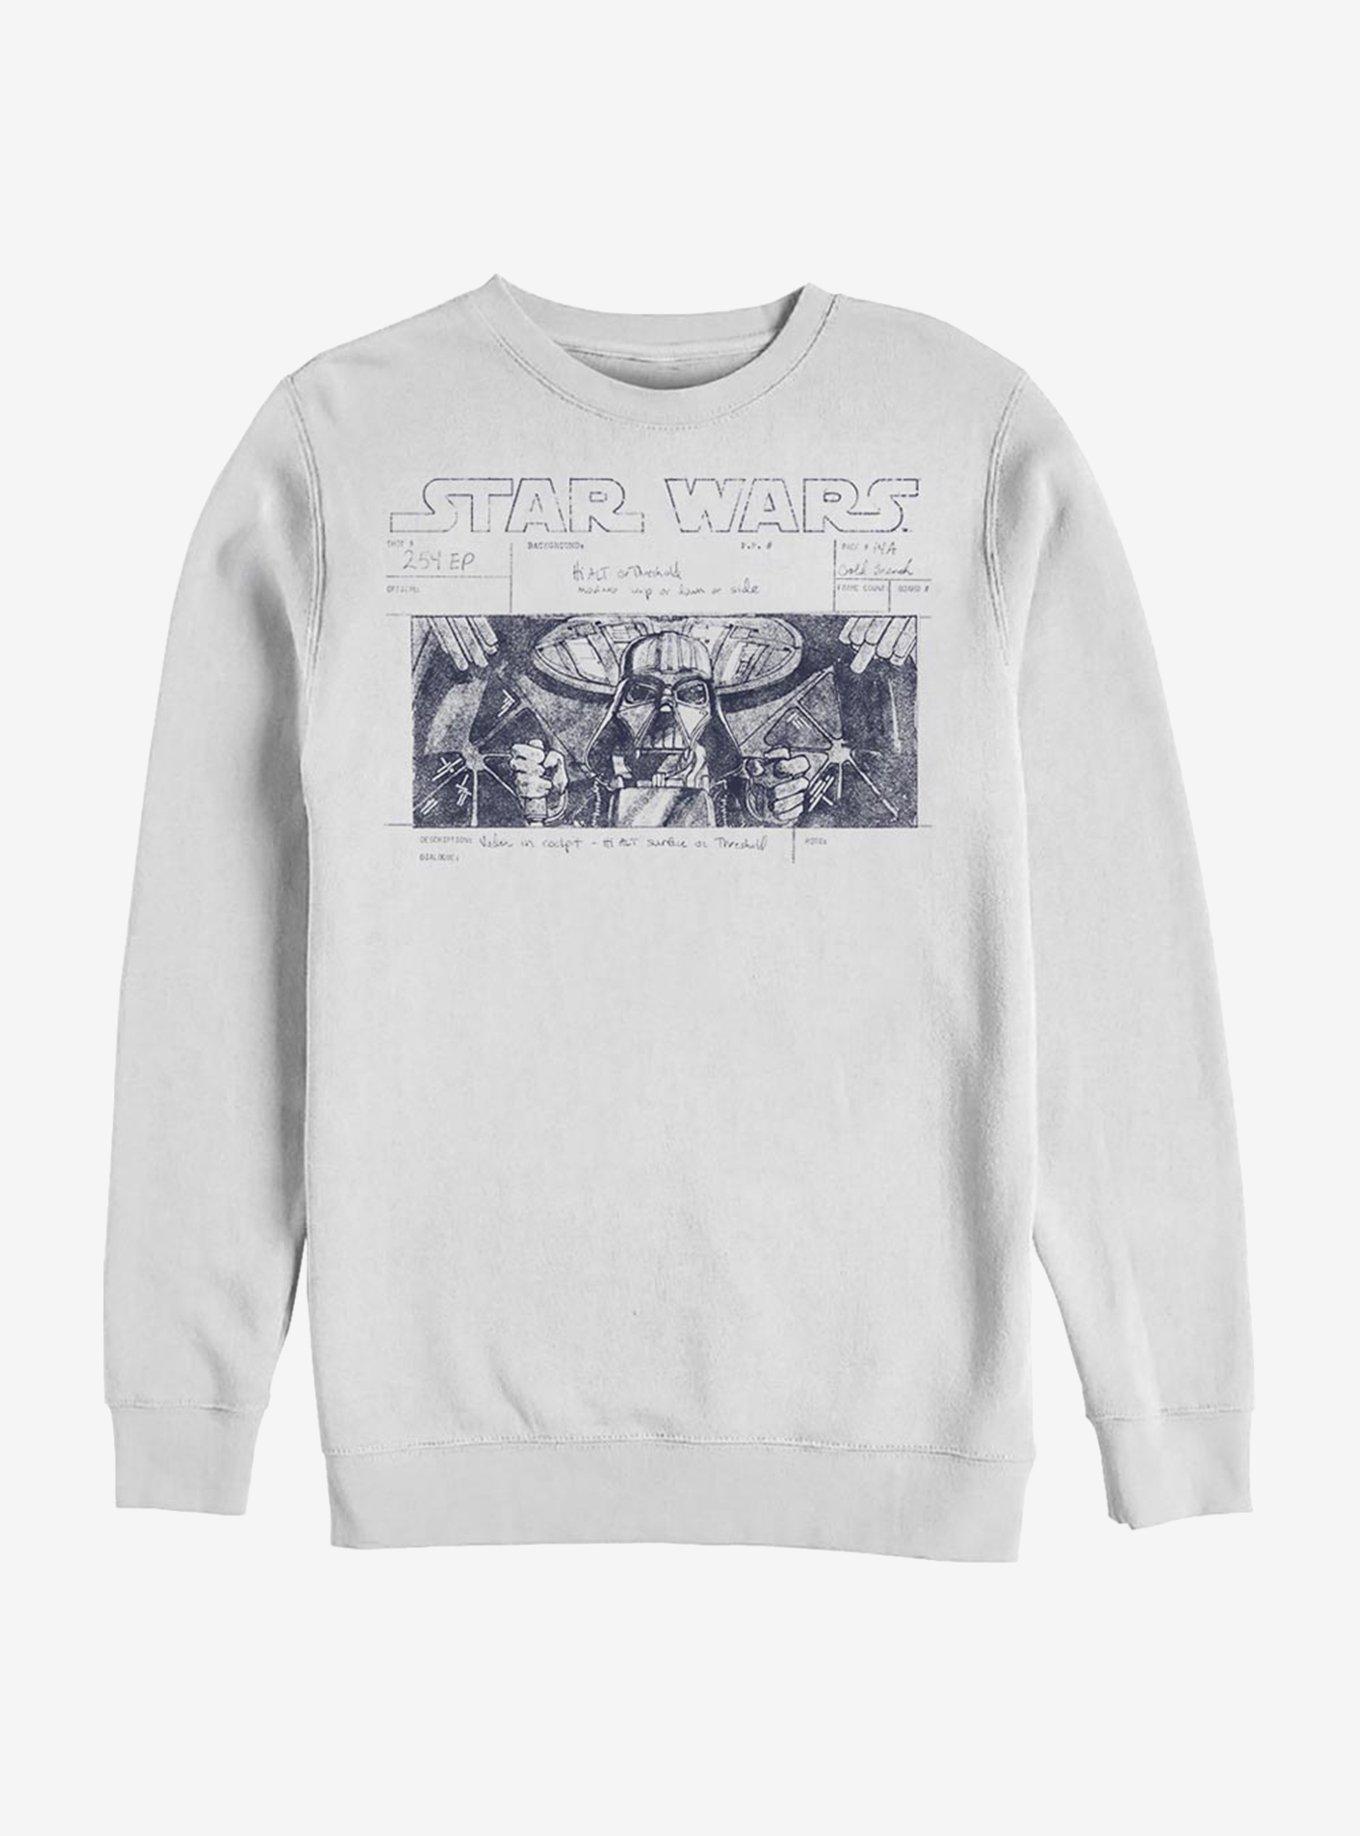 Star Wars Death Star Run Sweatshirt, WHITE, hi-res